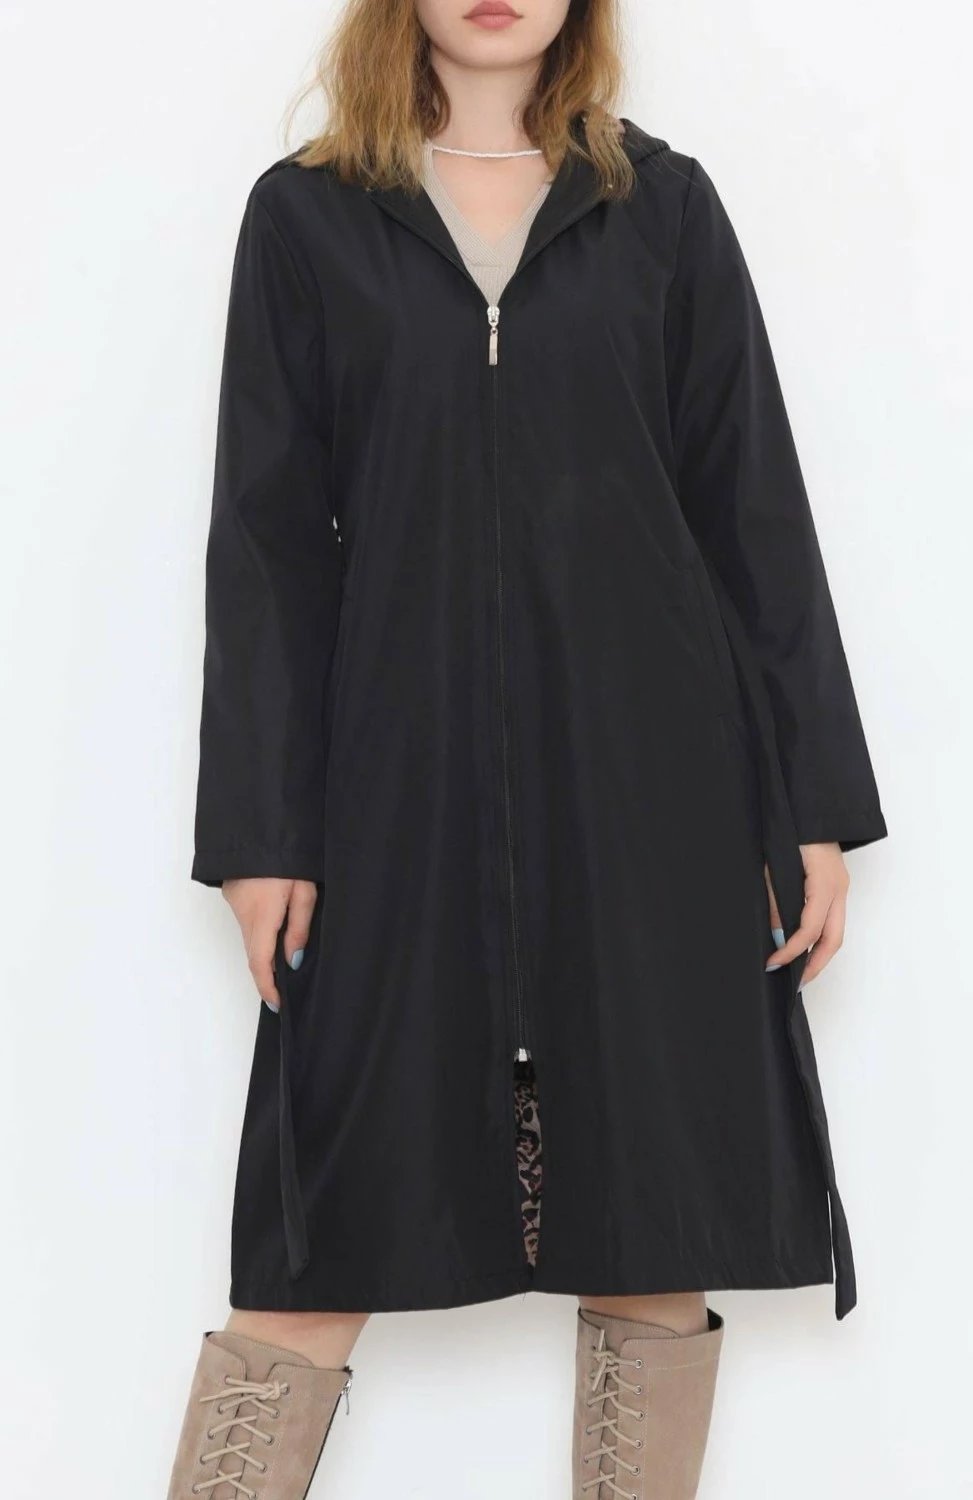 Pallto DBK Design by Kea, për femra, e zezë